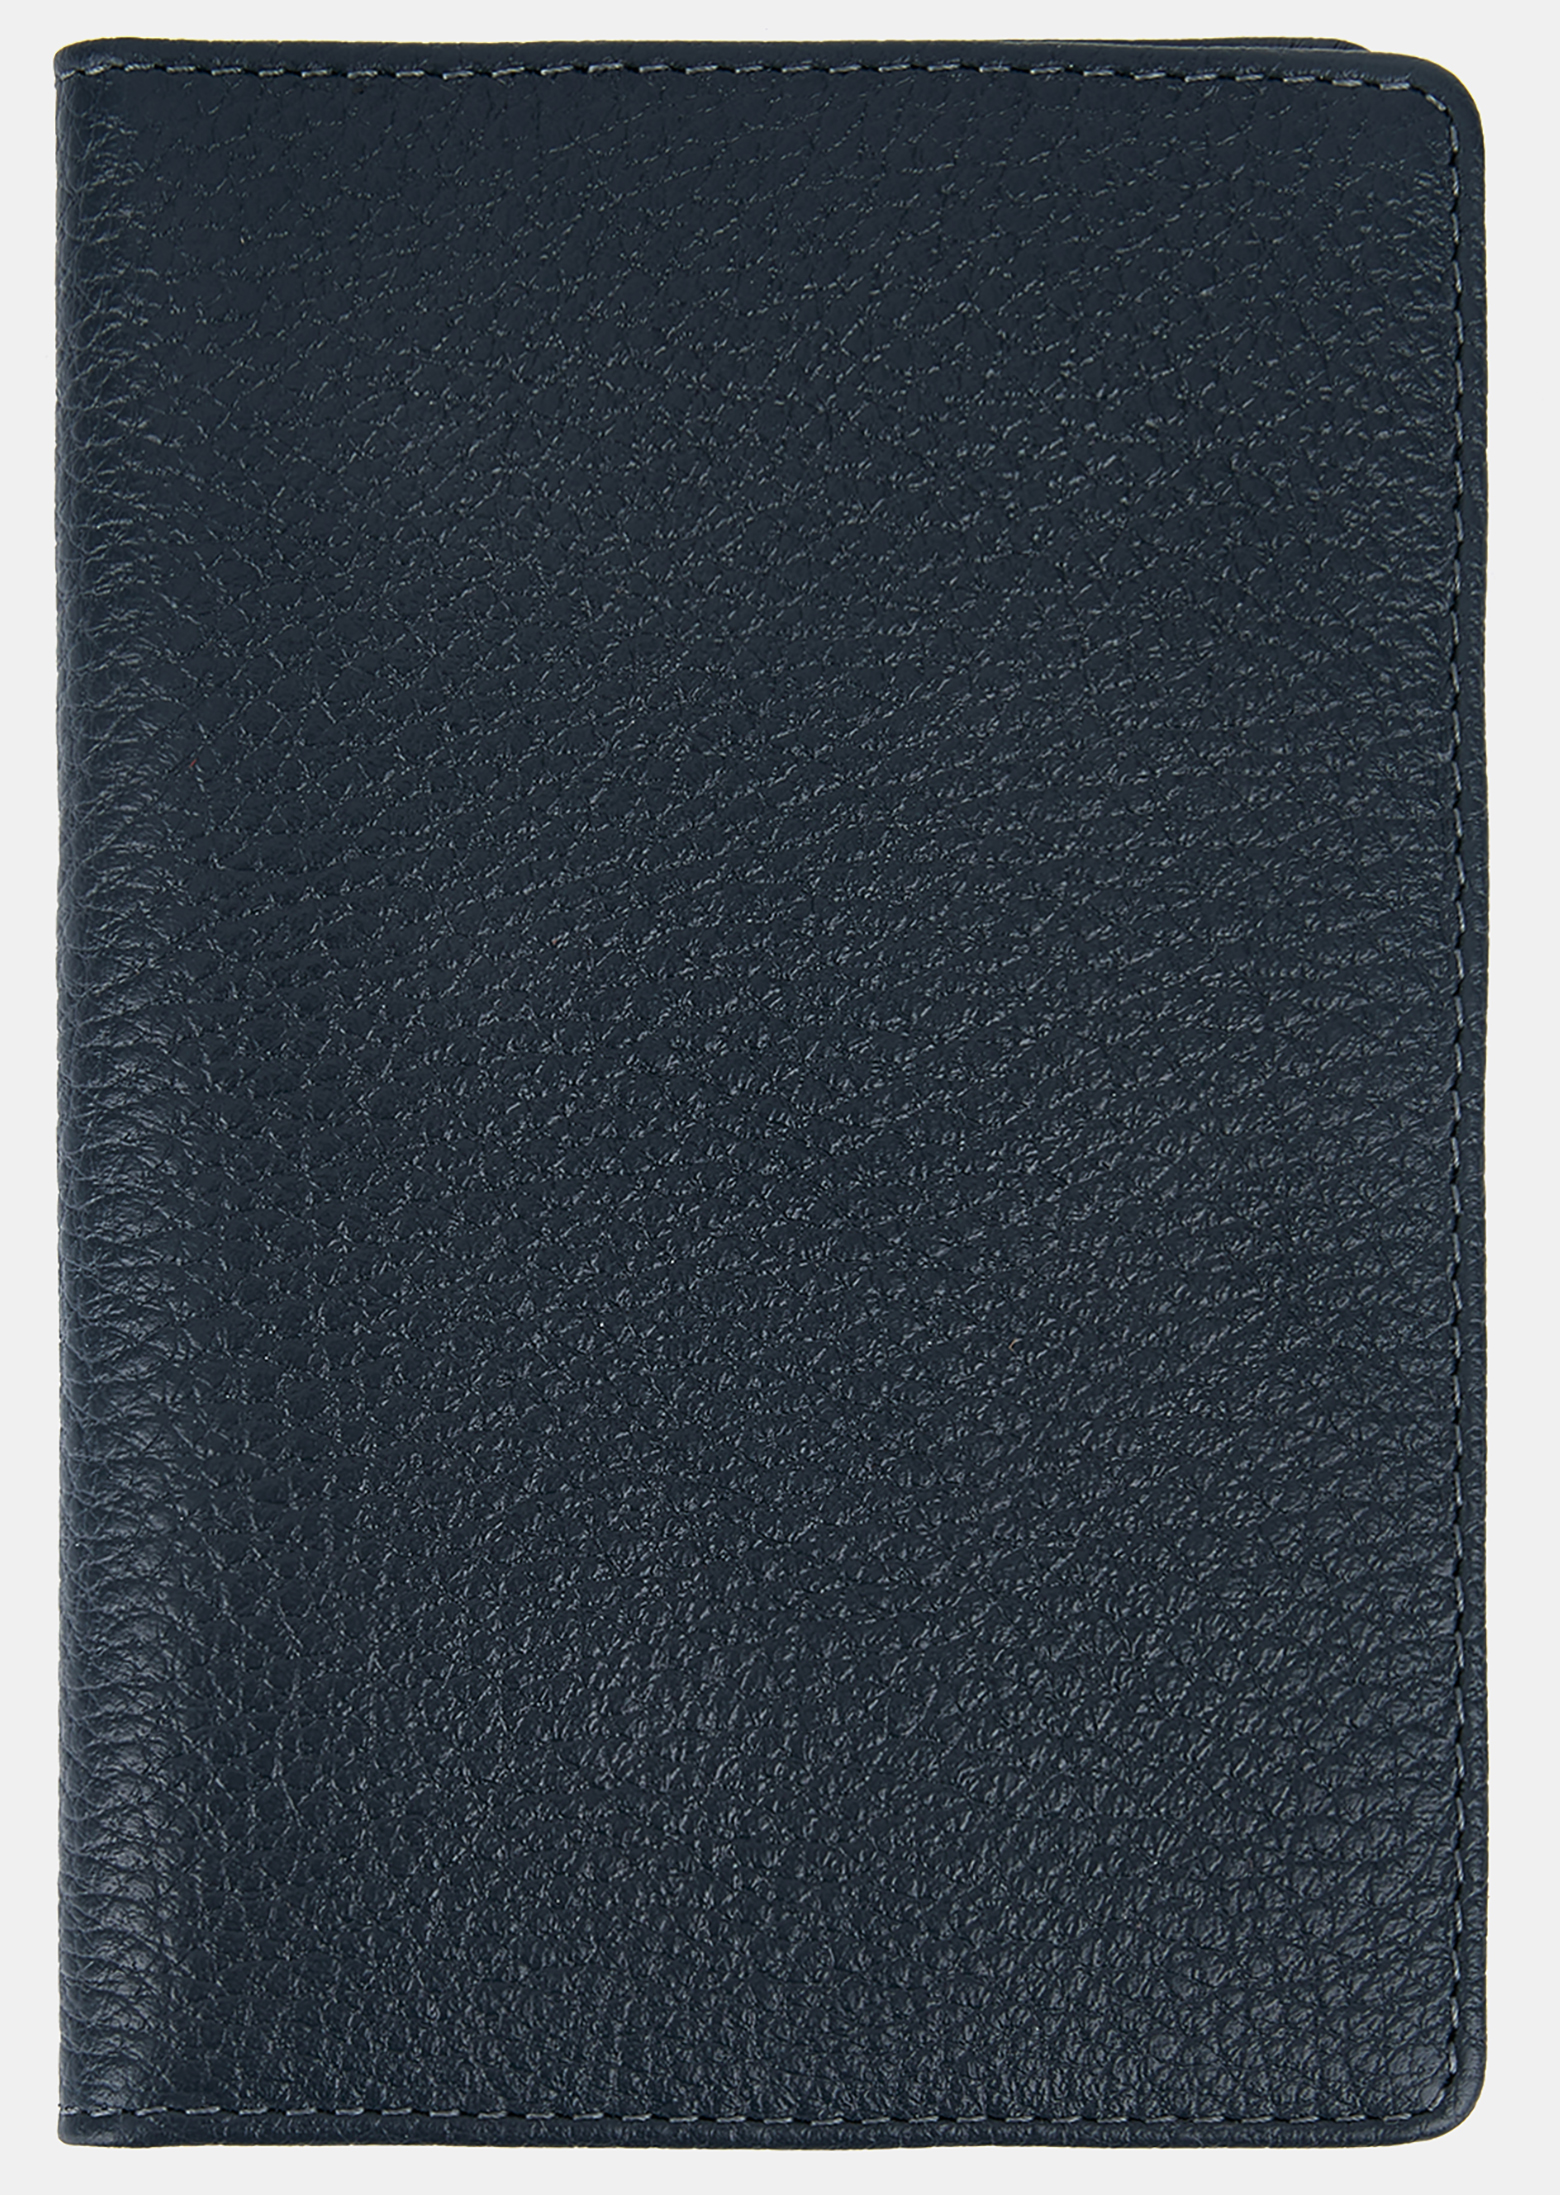 Обложка для паспорта мужская Ralf Ringer АУГЮ008500 синяя